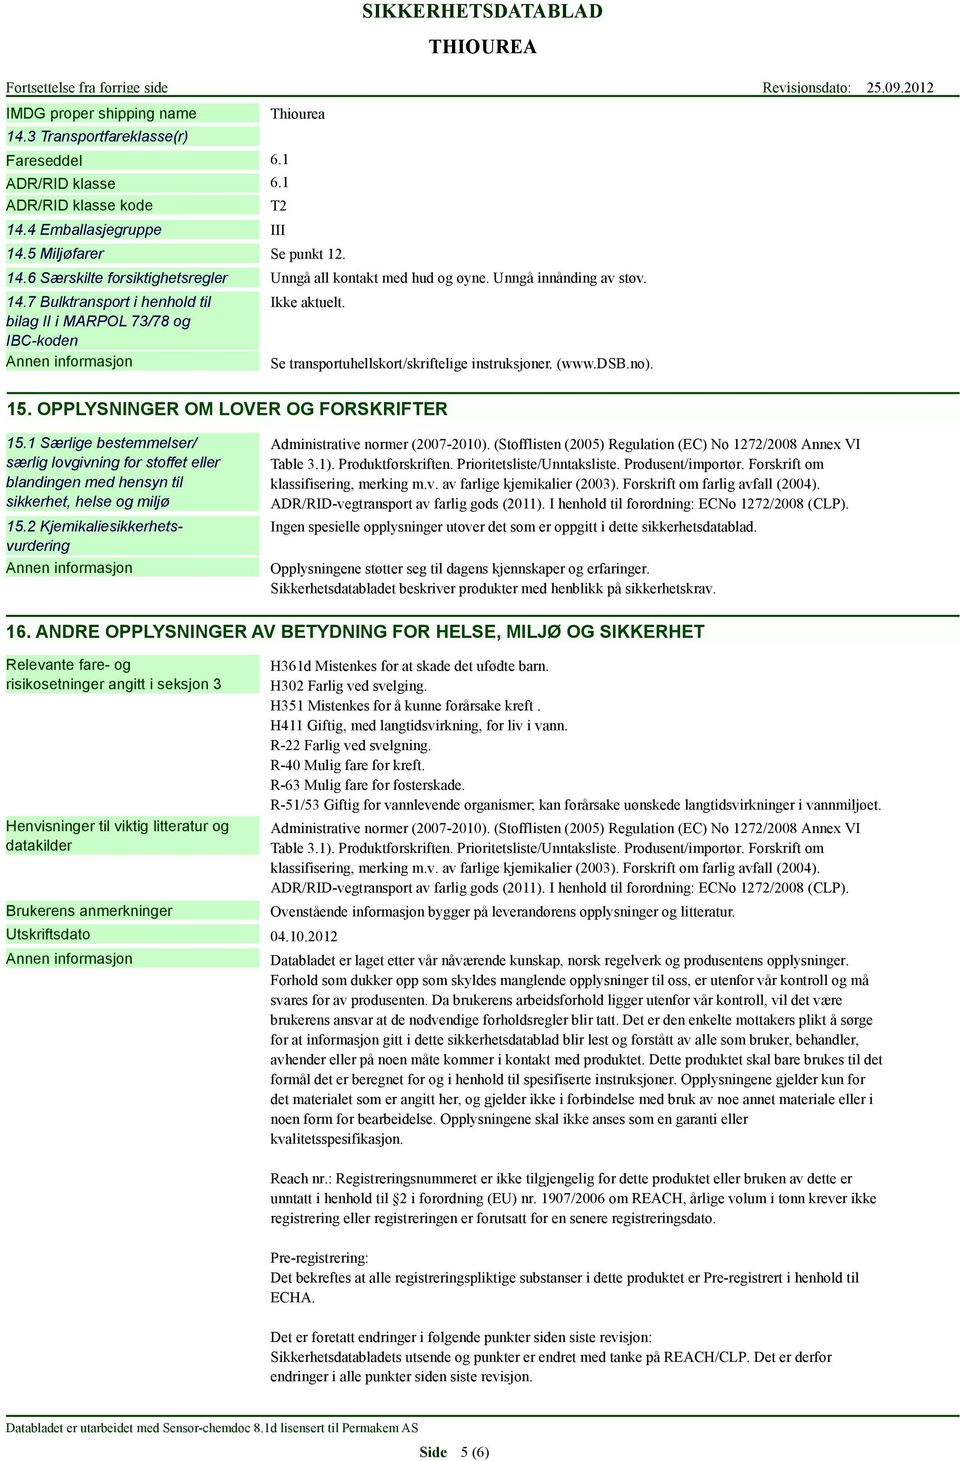 (www.dsb.no). 15.1 Særlige bestemmelser/ særlig lovgivning for stoffet eller blandingen med hensyn til sikkerhet, helse og miljø 15.2 Kjemikaliesikkerhetsvurdering Administrative normer (2007-2010).